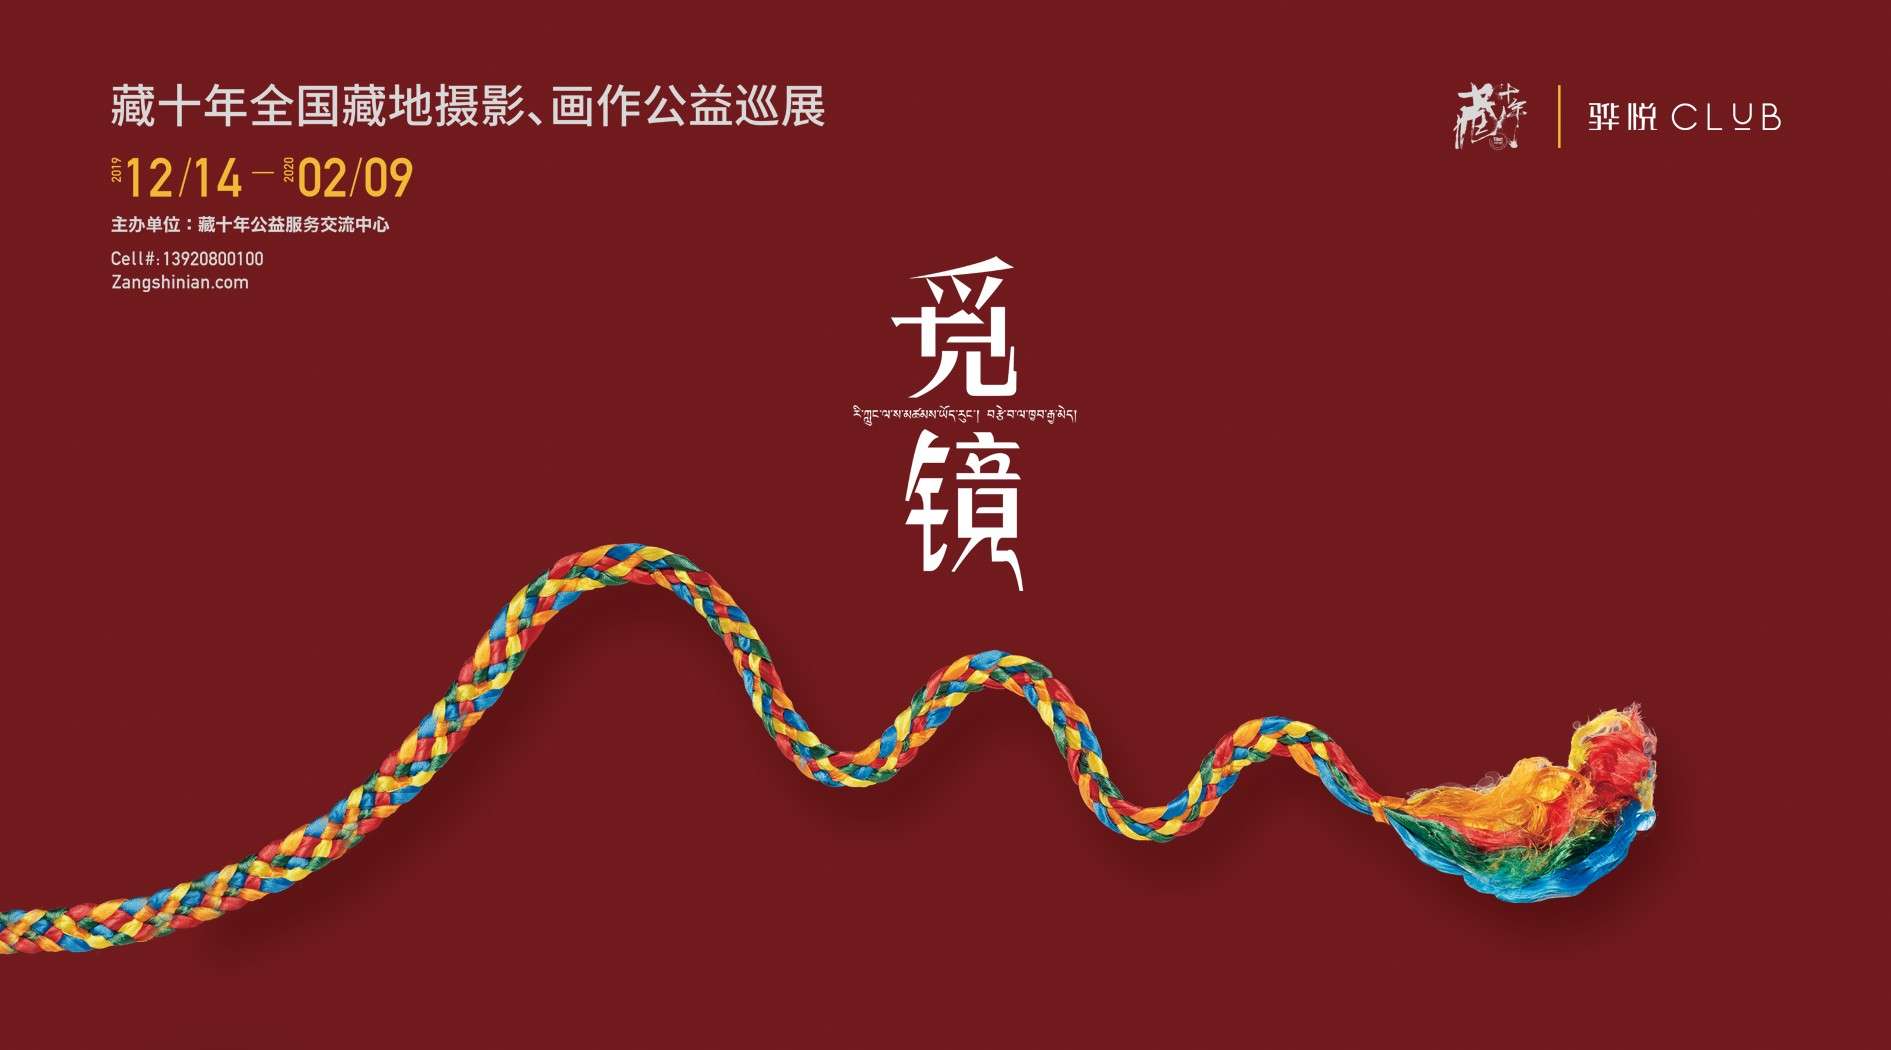 天津藏十年--觅镜布展记录